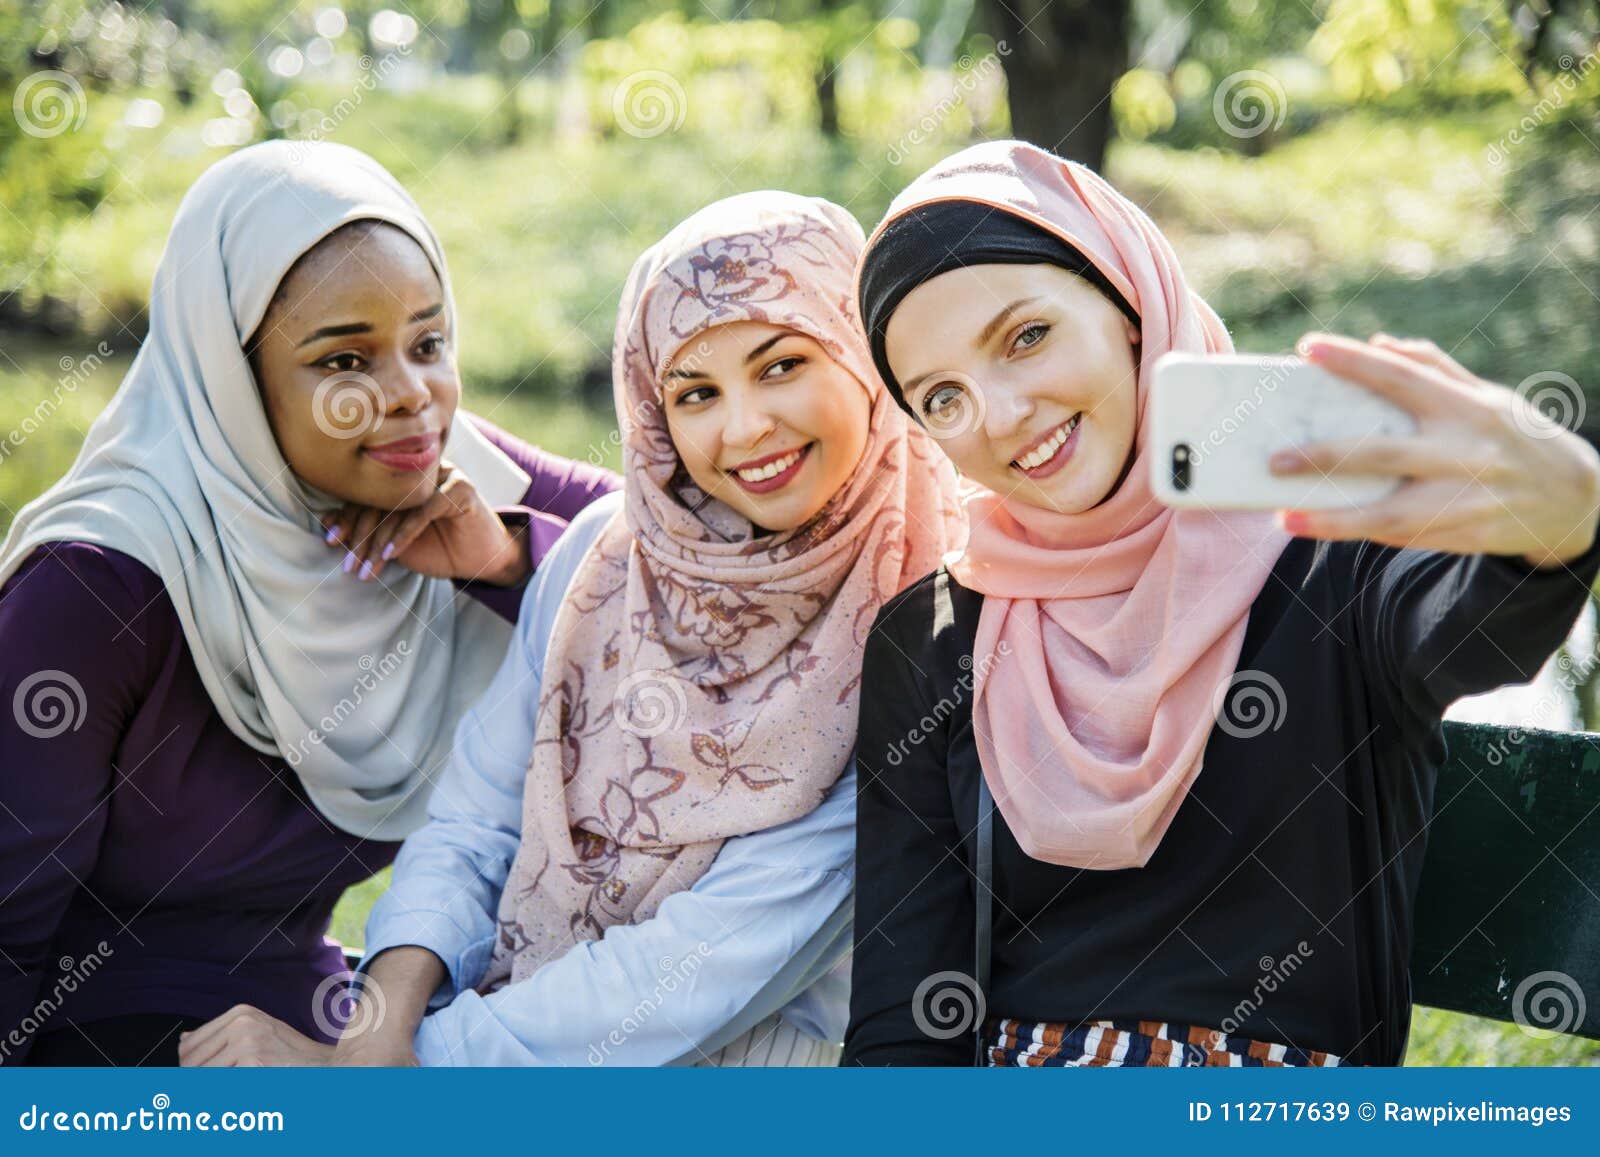 Muslim Friends